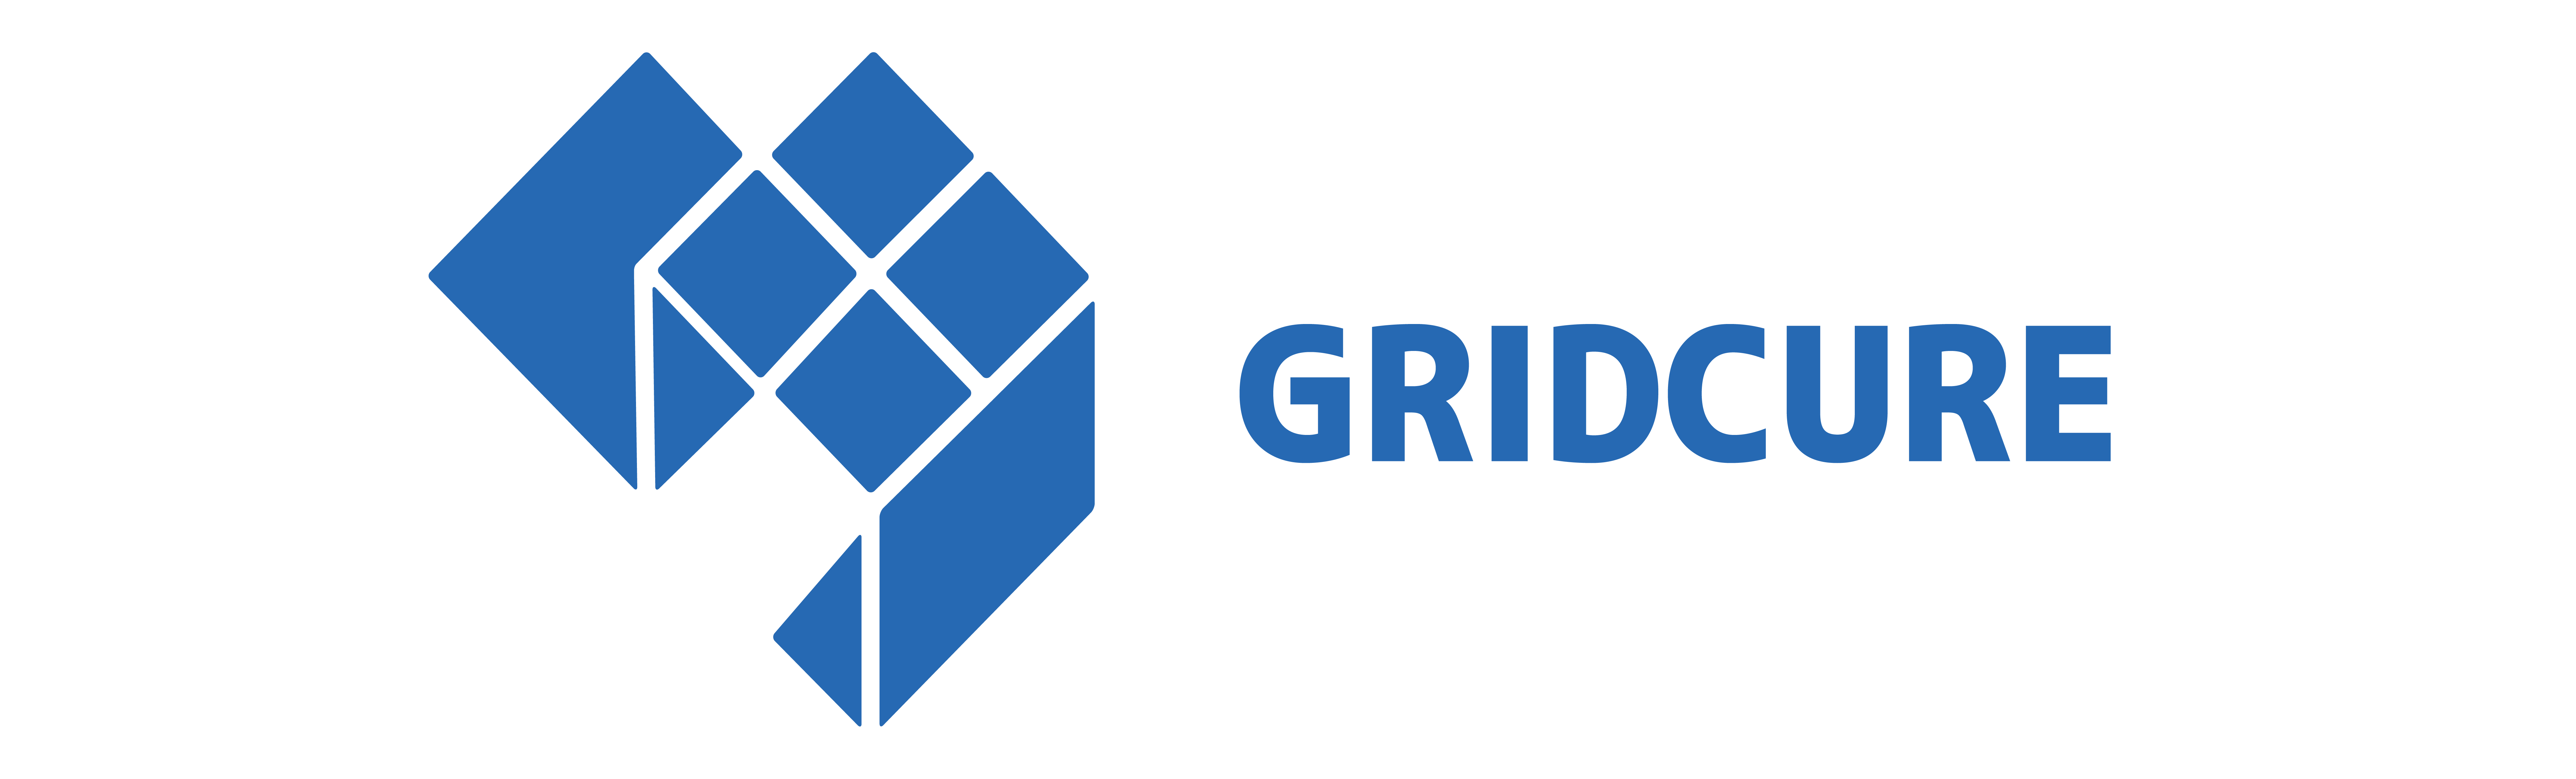 gridcure-logo-60a5b3bed667e